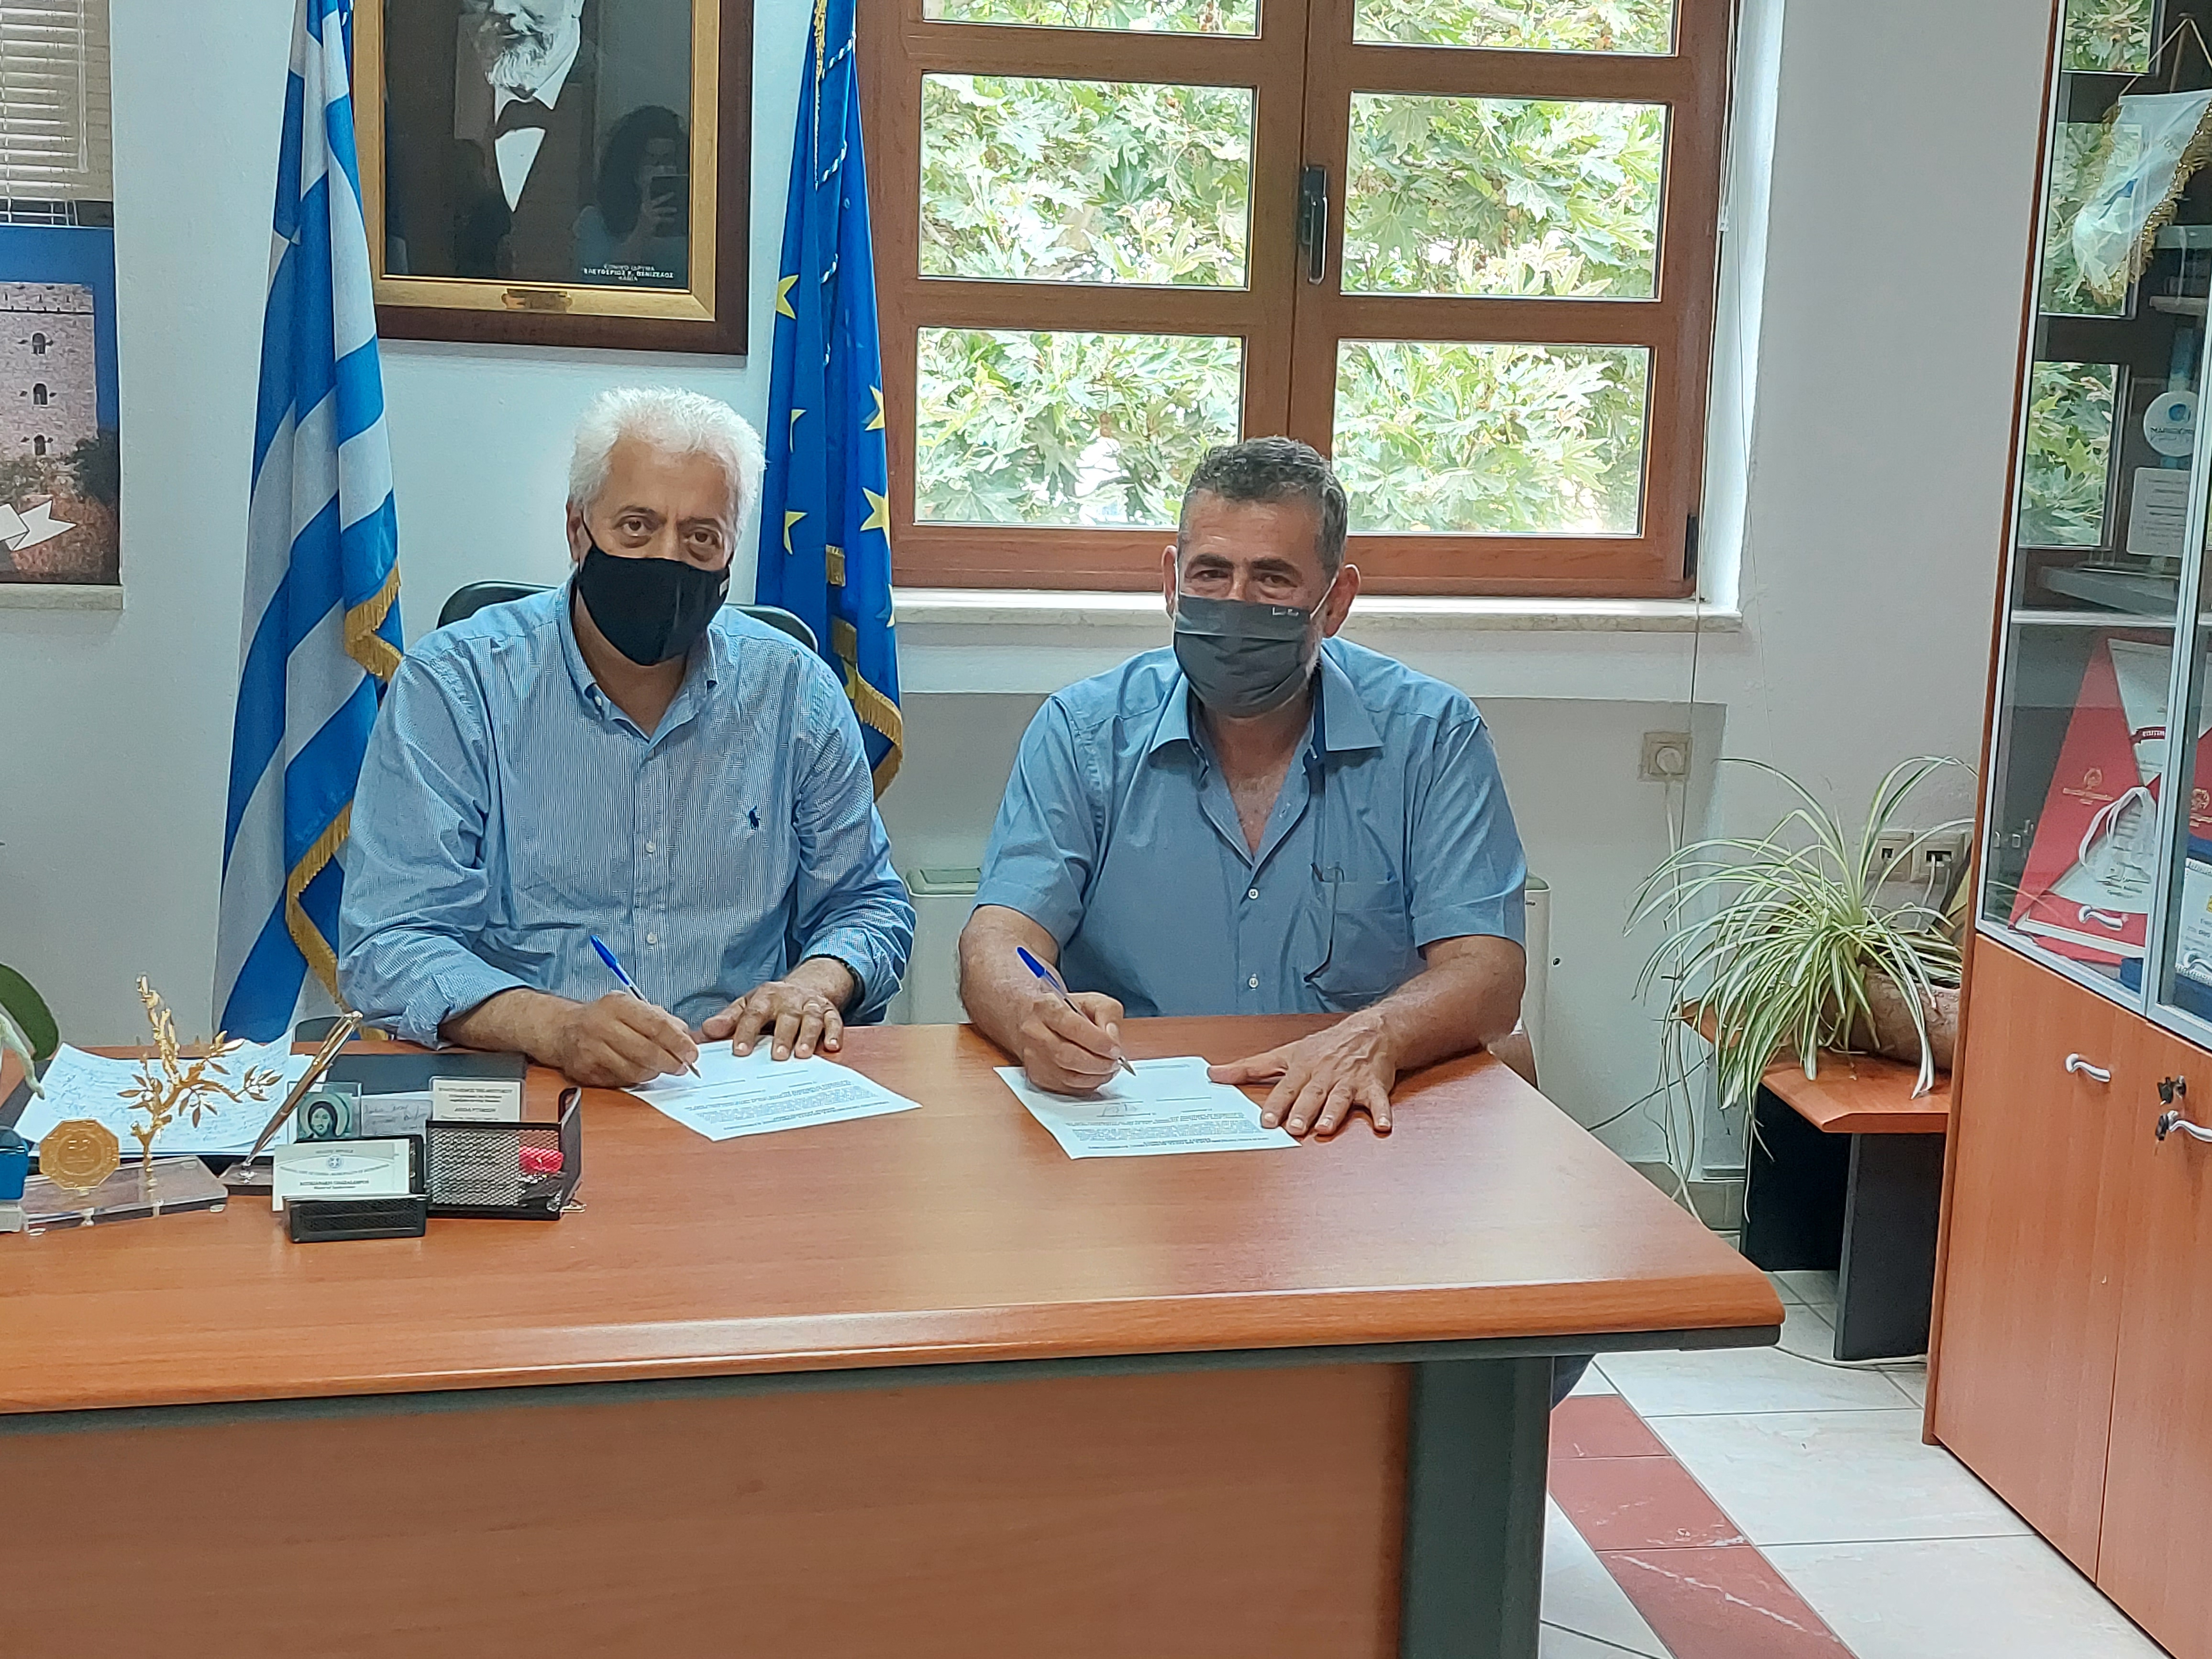 Δήμος Αποκορώνου: Νέος δημοτικός σύμβουλος στη θέση του Σταμάτη Σγουράκη